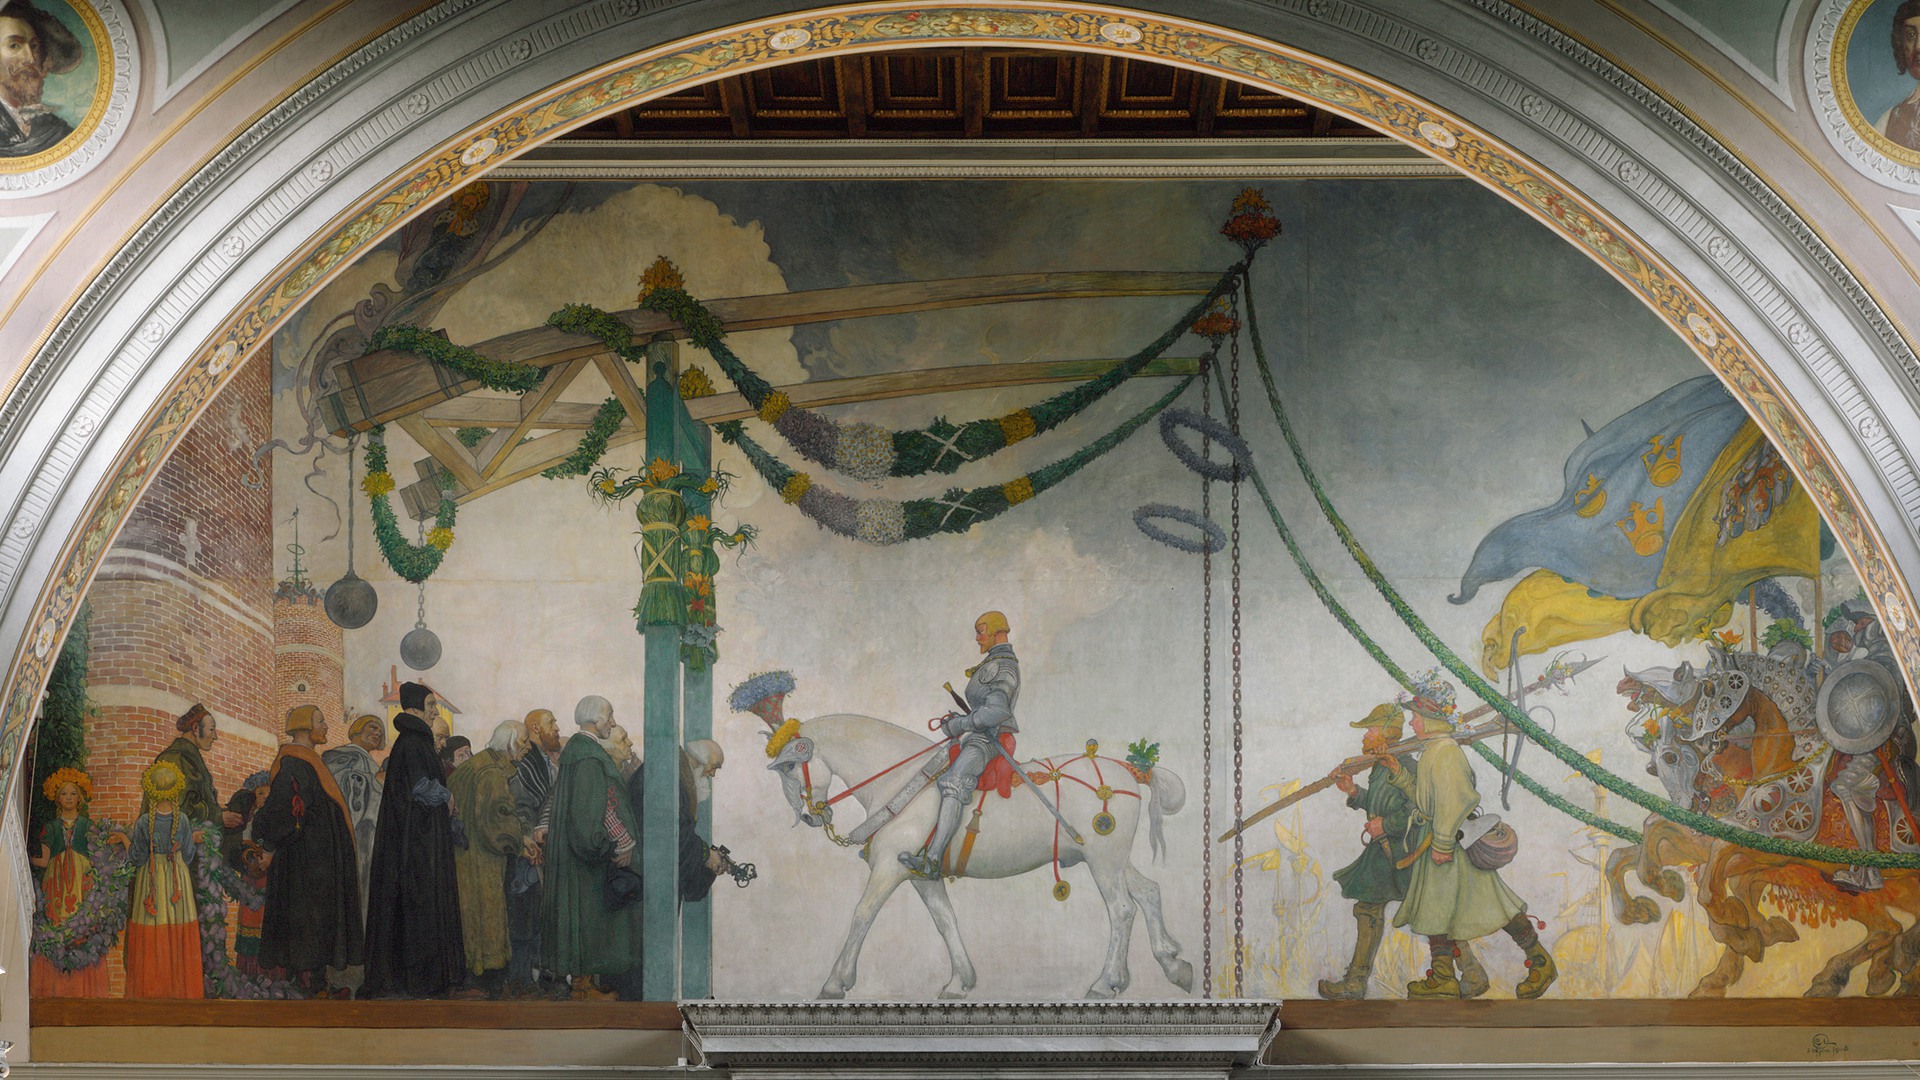 Målning föreställande Gustav Vasas intåg i Stockholm 1523, Gustav Vasa på vit häst och folkmassor runt omkring.